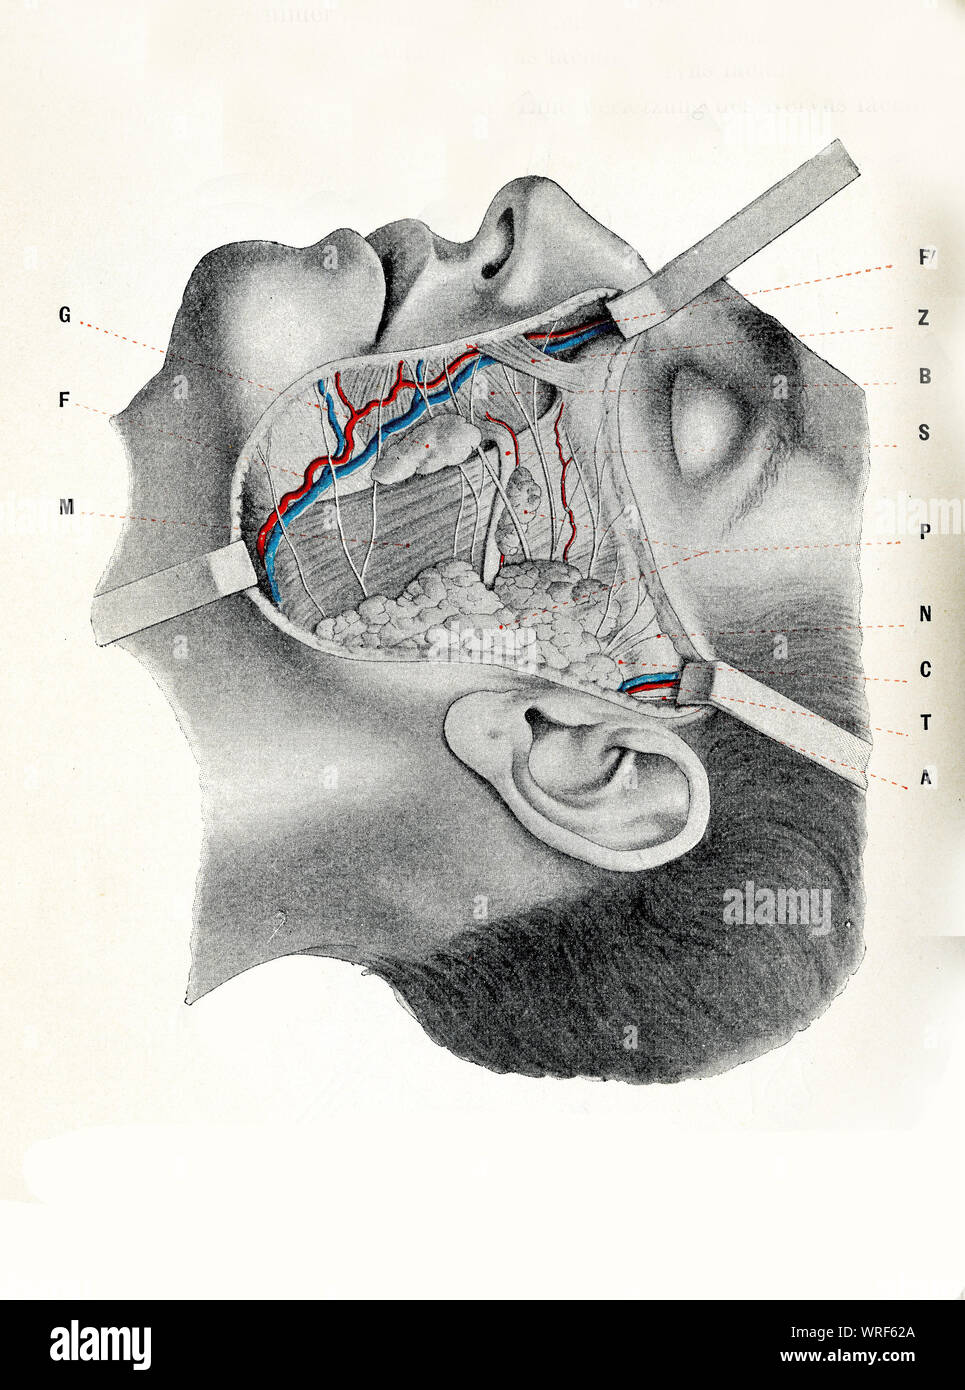 Chirurgie und Medizin-Wange Region: suborbital, preauricolar und buccomandibular zonee mit Gesichts Muskulatur ausgesetzt, Gesichts Arterie und Vene Stockfoto